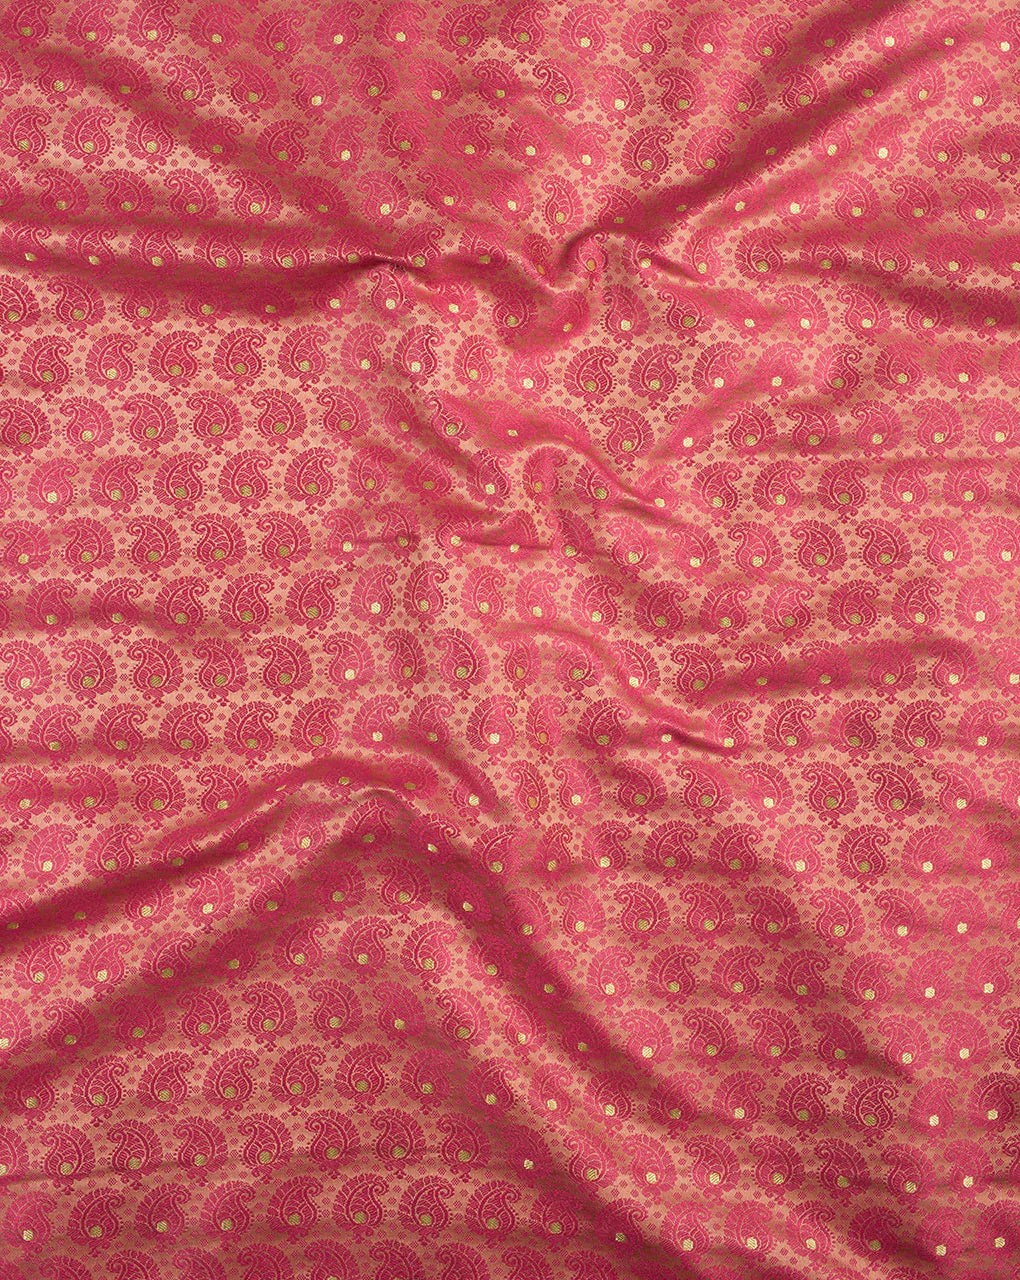 Jamawar Weave Woven Satin Banarasi Fabric - Fabriclore.com